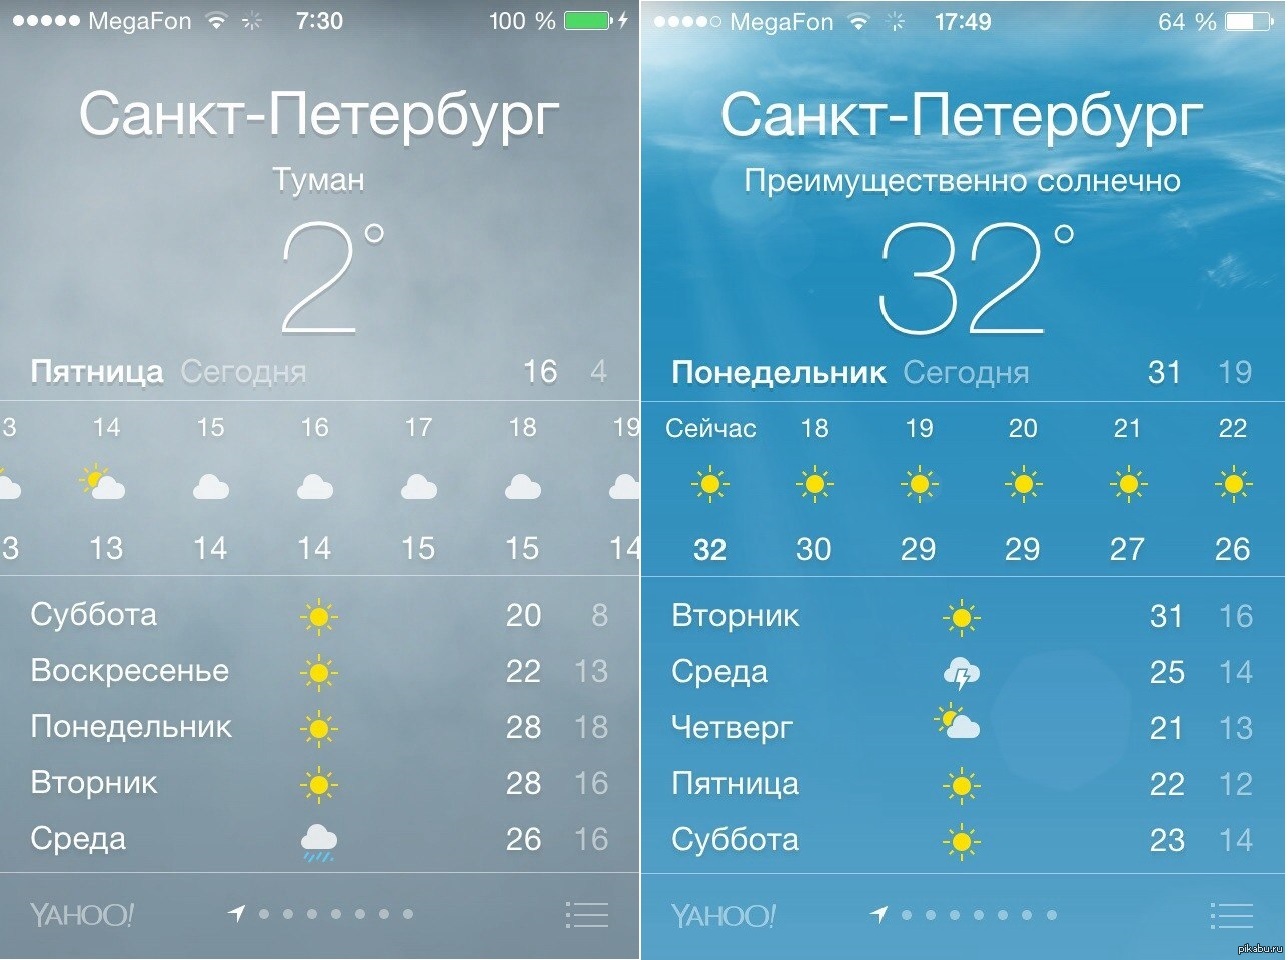 Погода на пятницу субботу воскресенье. Погода всанкитпетербурге. Погода в Санкт-петербургепе. Прогноз погоды в Санкт-Петербурге. Погода в Санкт-Петербурге на сегодня.